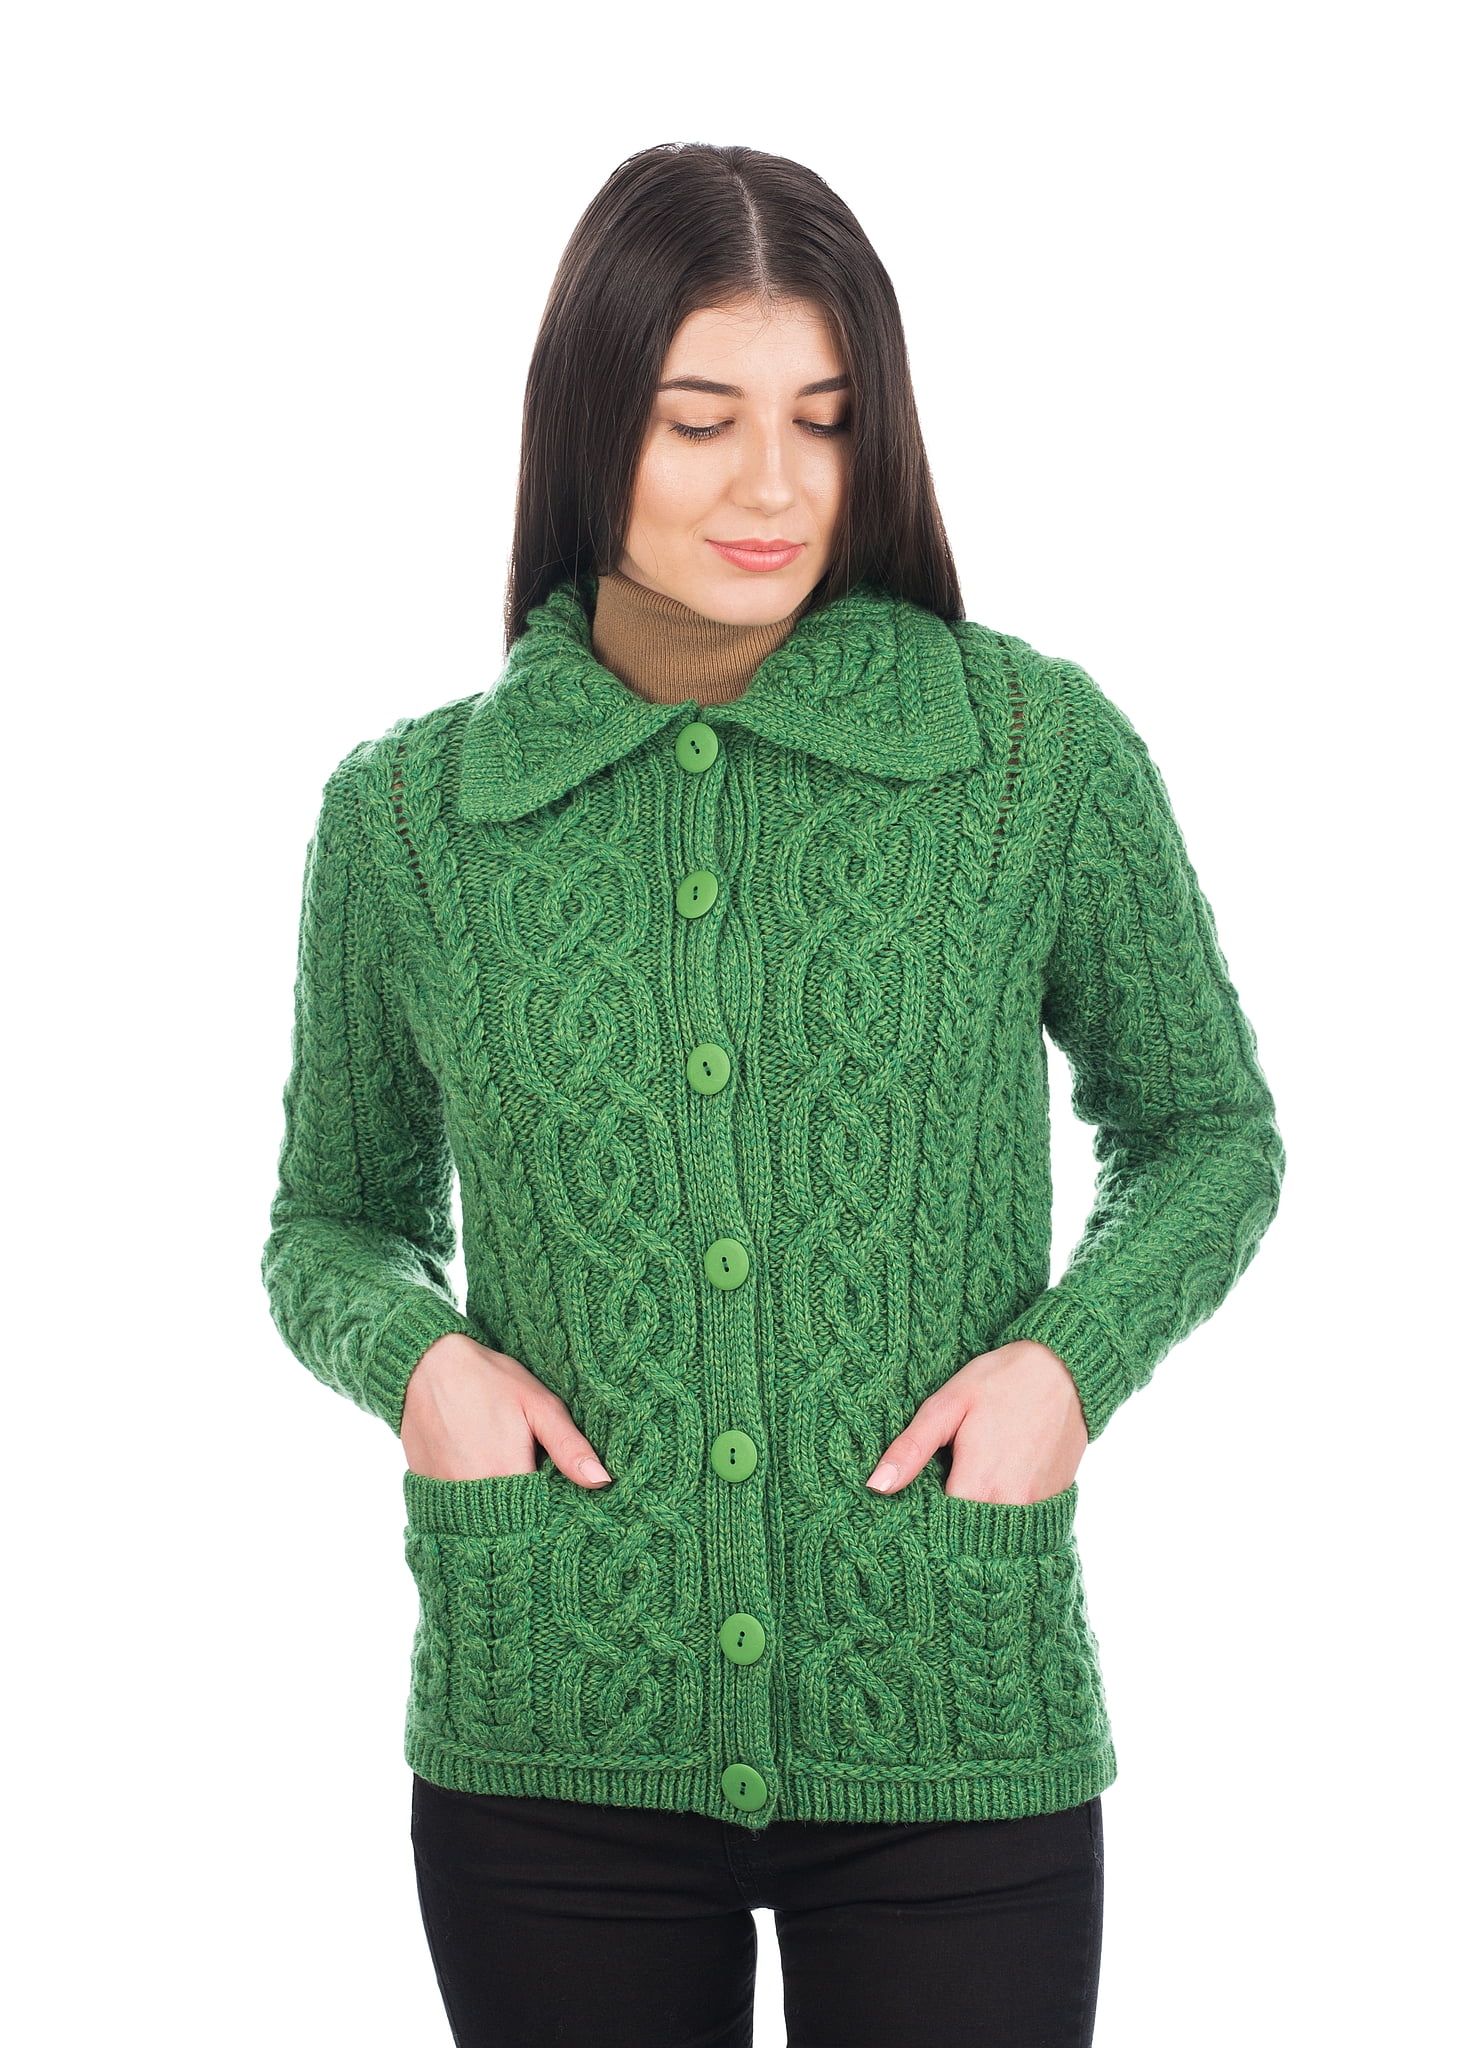 SAOL - Irish Cardigan Sweater for Women 100% Merino Wool Aran Knit ...